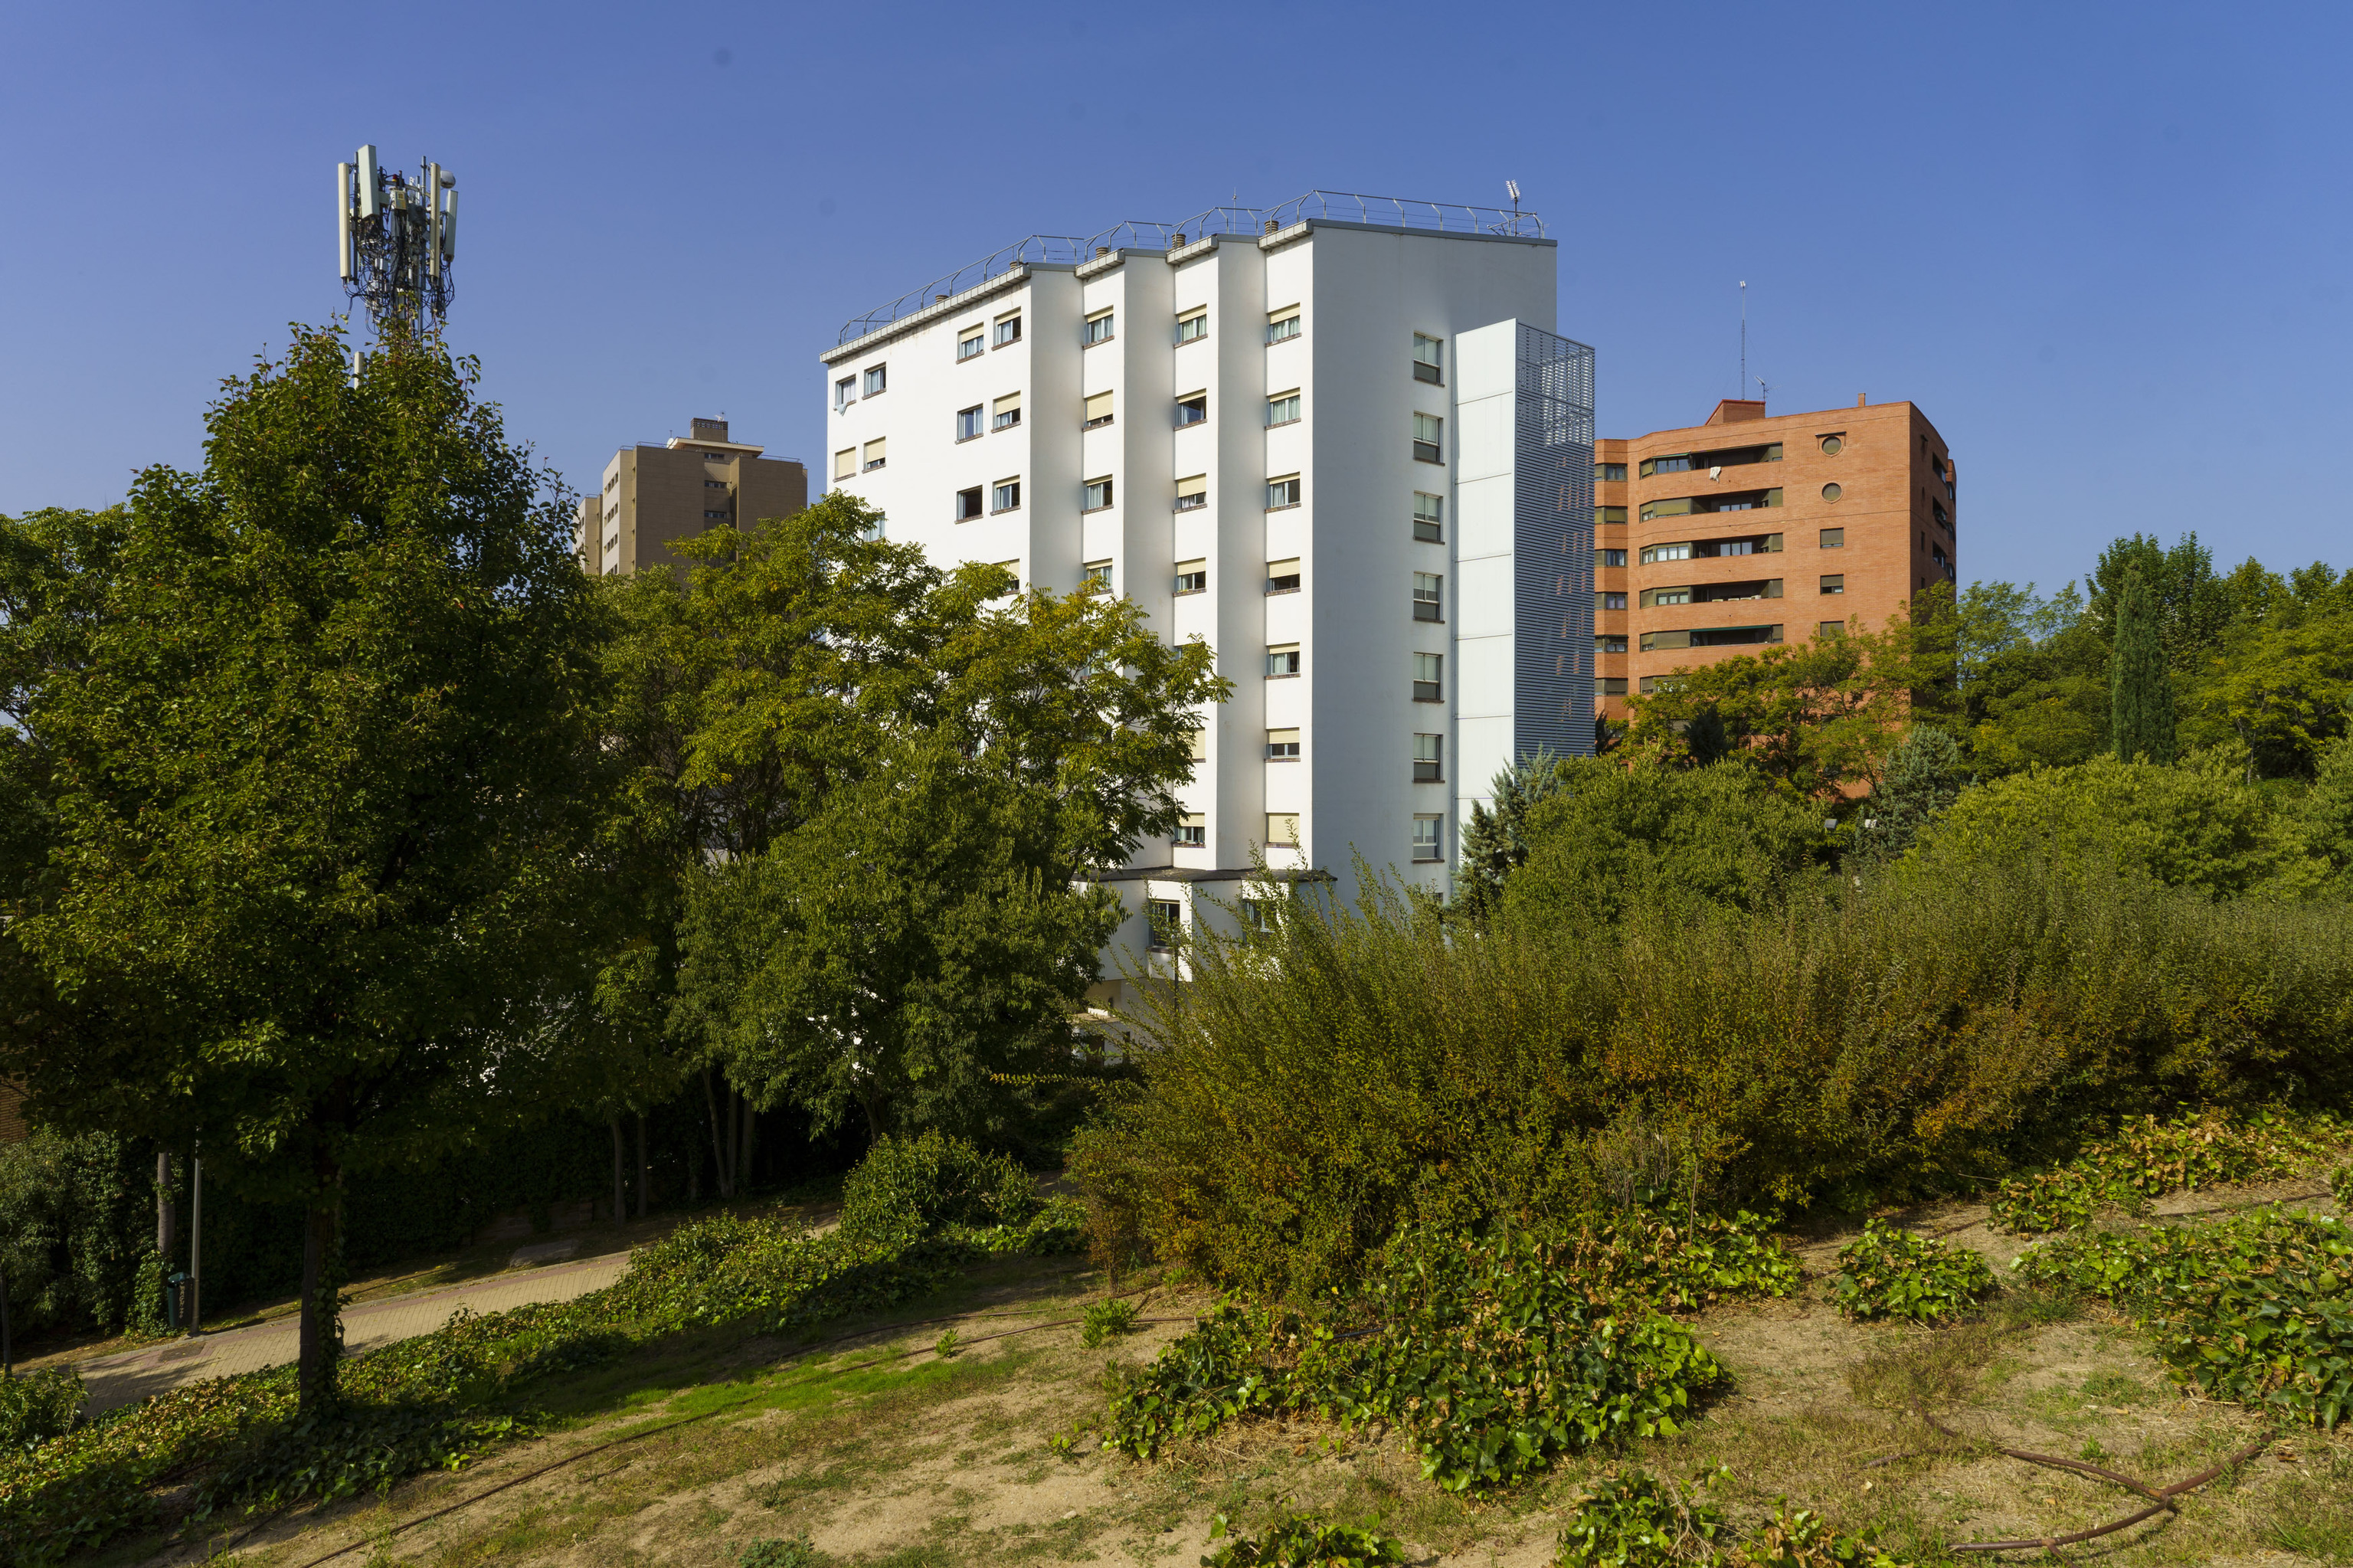 Colegio Mayor Elias Ahuja, en ciudad Universitaria, en Madrid.